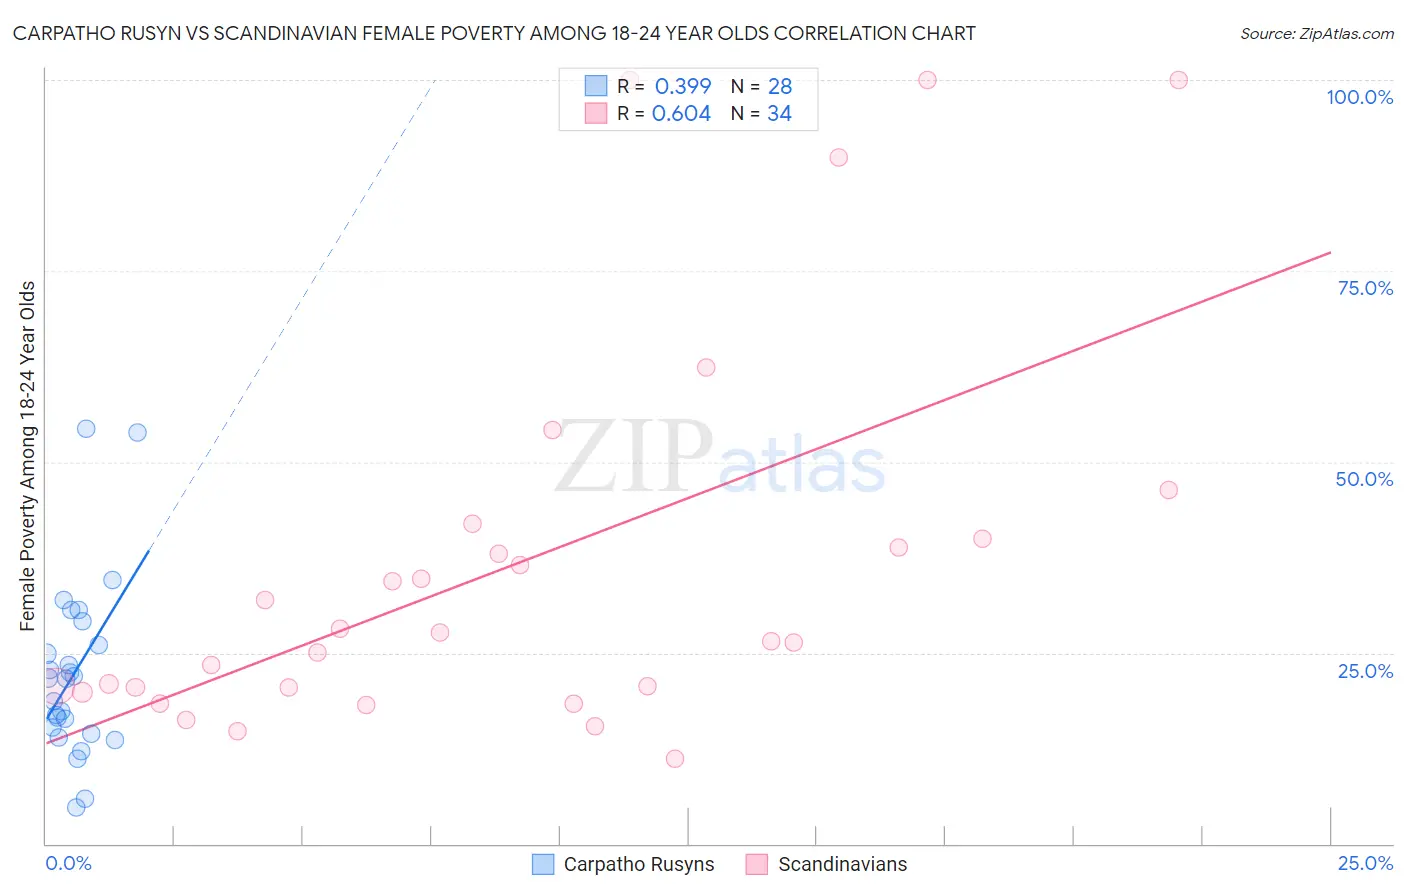 Carpatho Rusyn vs Scandinavian Female Poverty Among 18-24 Year Olds